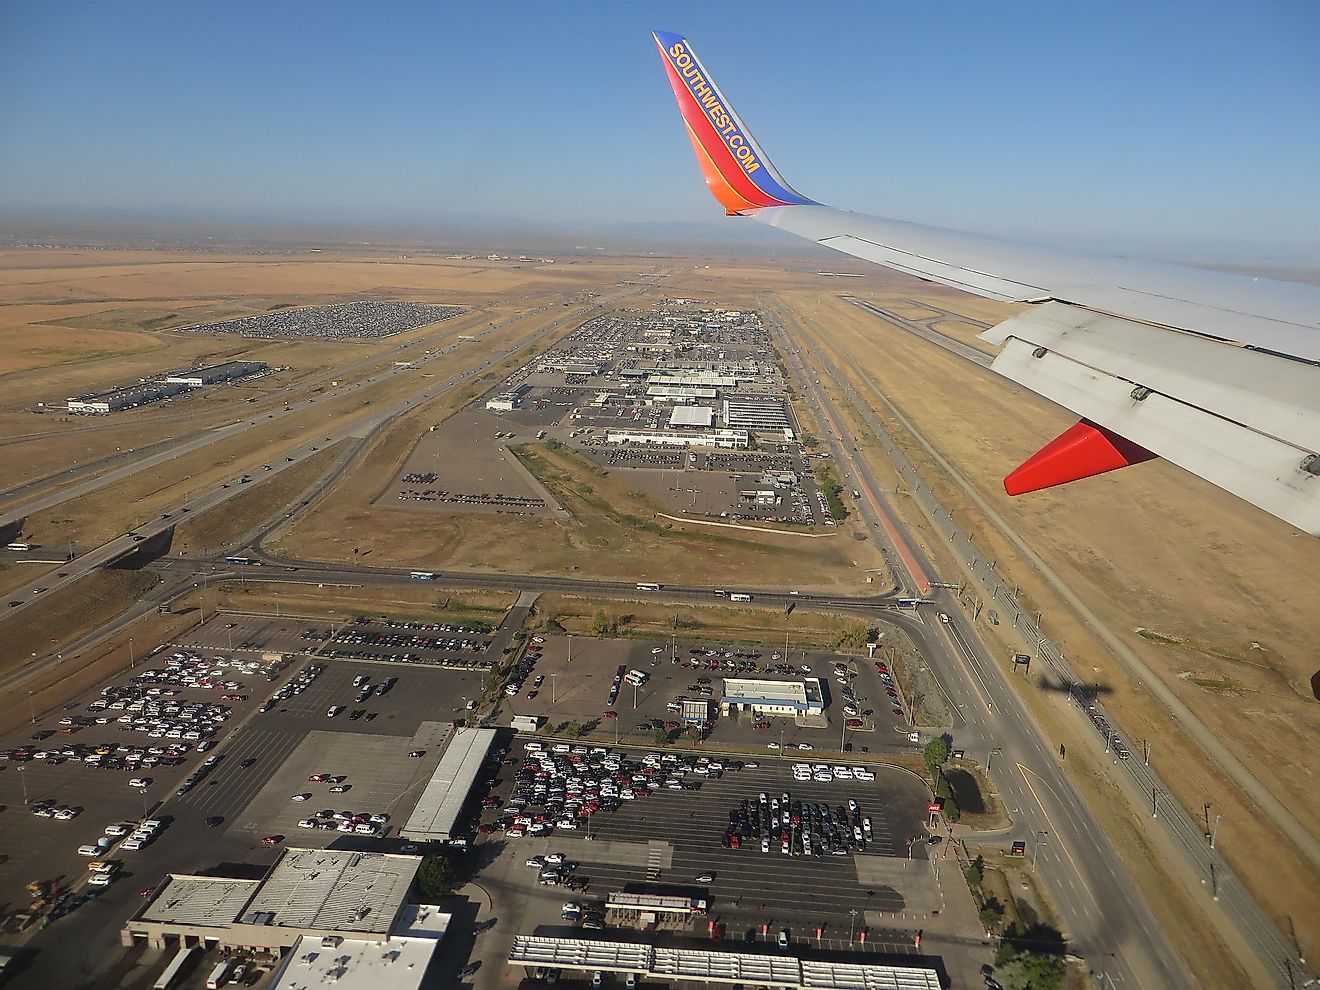 Landing at Denver International Airport, Denver, Colorado. Image credit: Ken Lund/Shutterstock.com